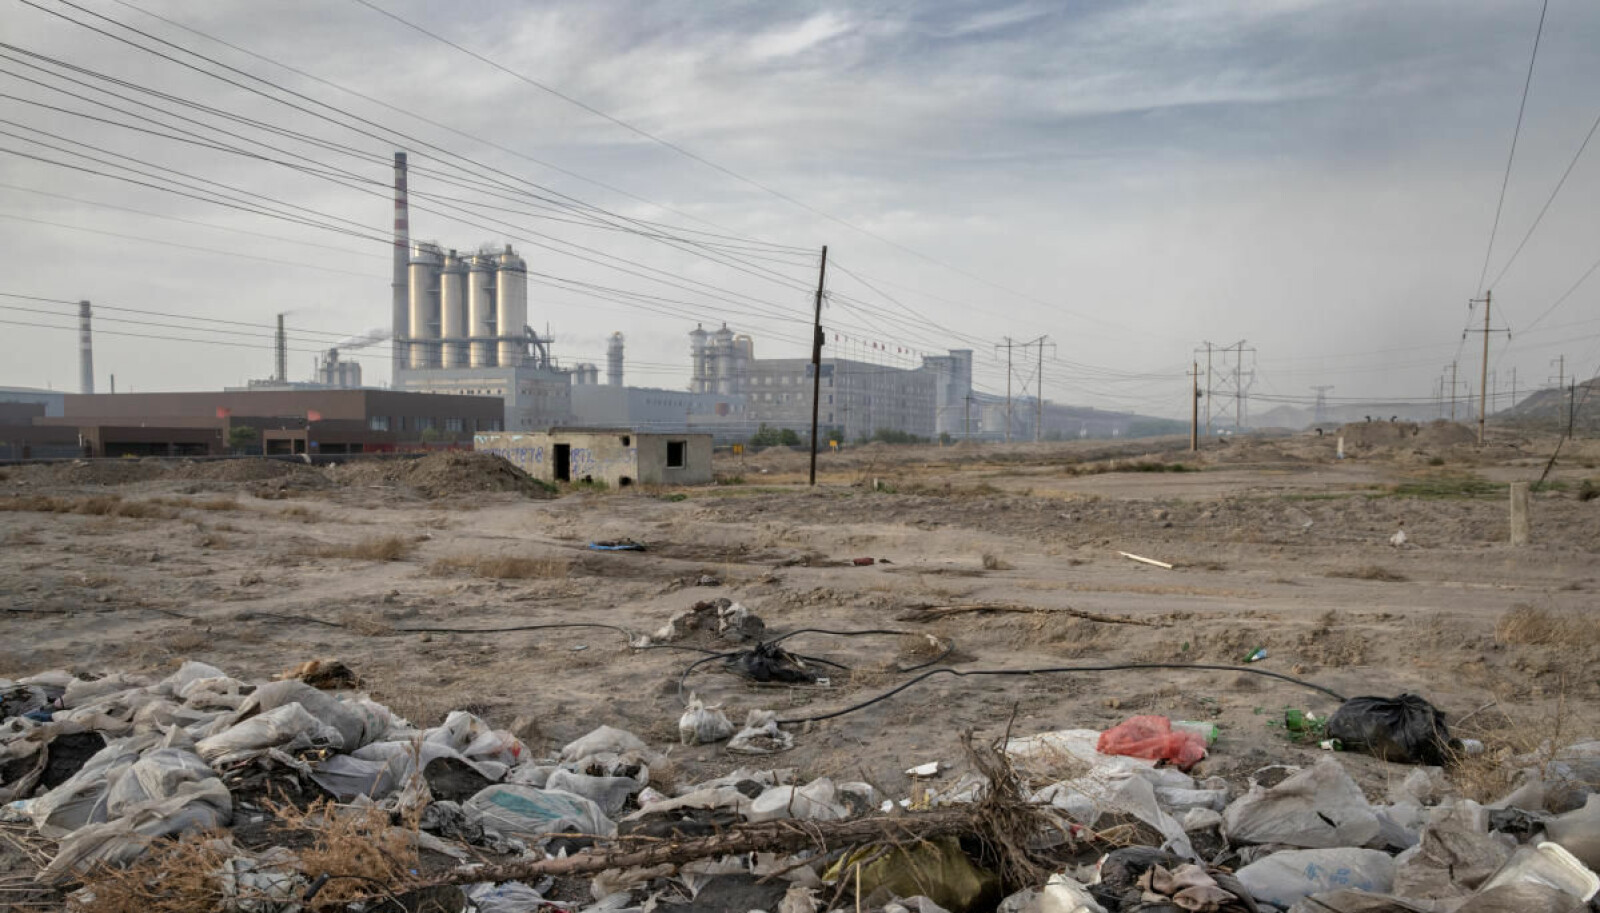 Lite idyllisk: Kanskje henger det sammen – luftforurensning og forsøpling. Kina har blitt et land med lite søppel. Men her hvor landskapet er grått og lufta forurenset, blir folk kanskje mindre opptatt av å holde omgivelsene rene?